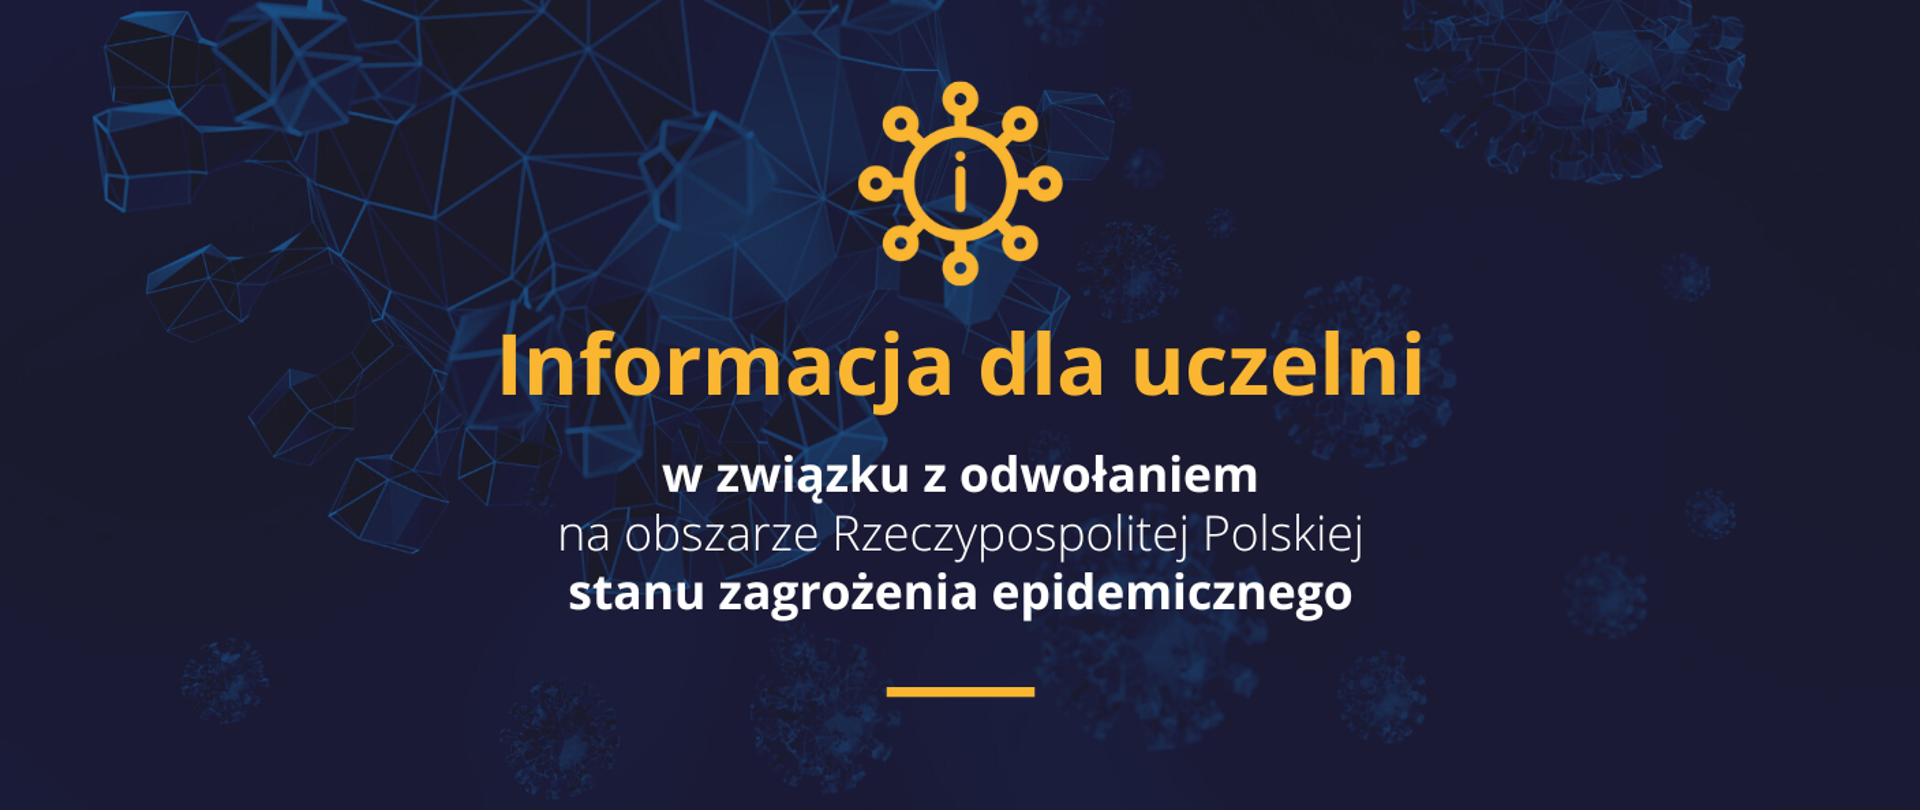 Grafika z napisem Informacja dla uczelni w związku z odwołaniem na obszarze Rzeczypospolitej Polskiej stanu zagrożenia epidemicznego